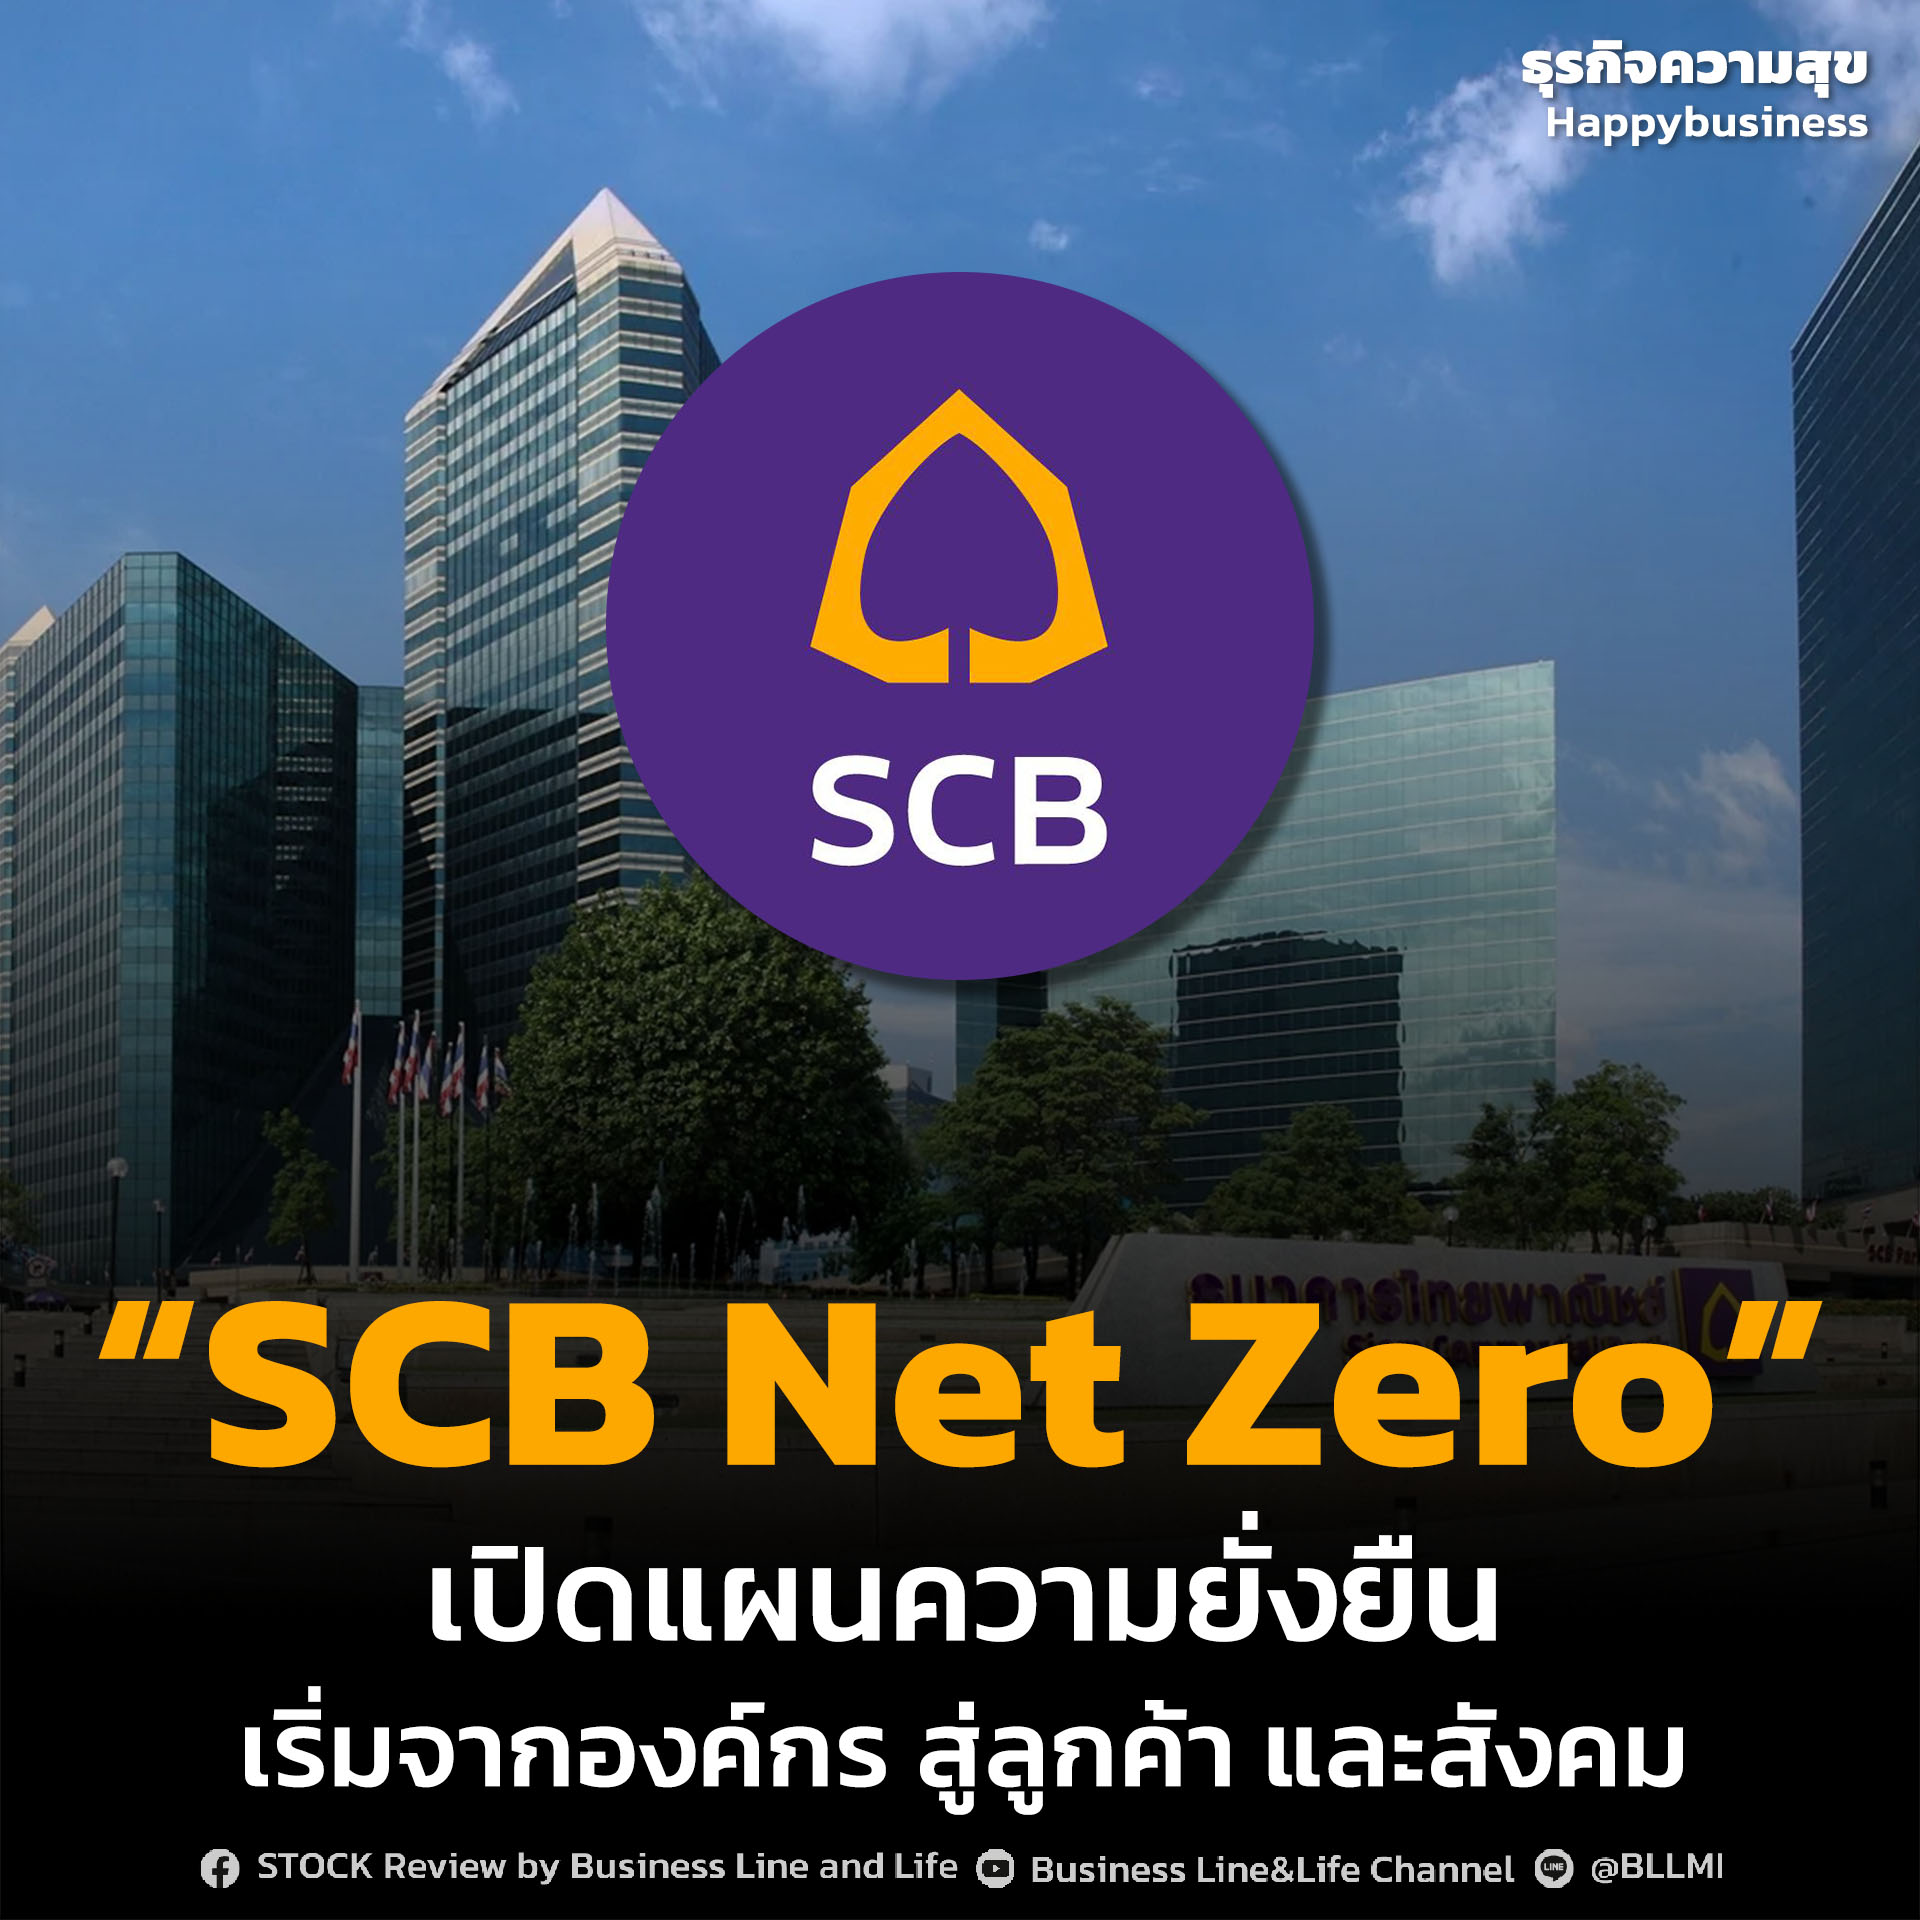 “SCB Net Zero” เปิดแผนความยั่งยืนเริ่มจากองค์กร สู่ลูกค้า และสังคม